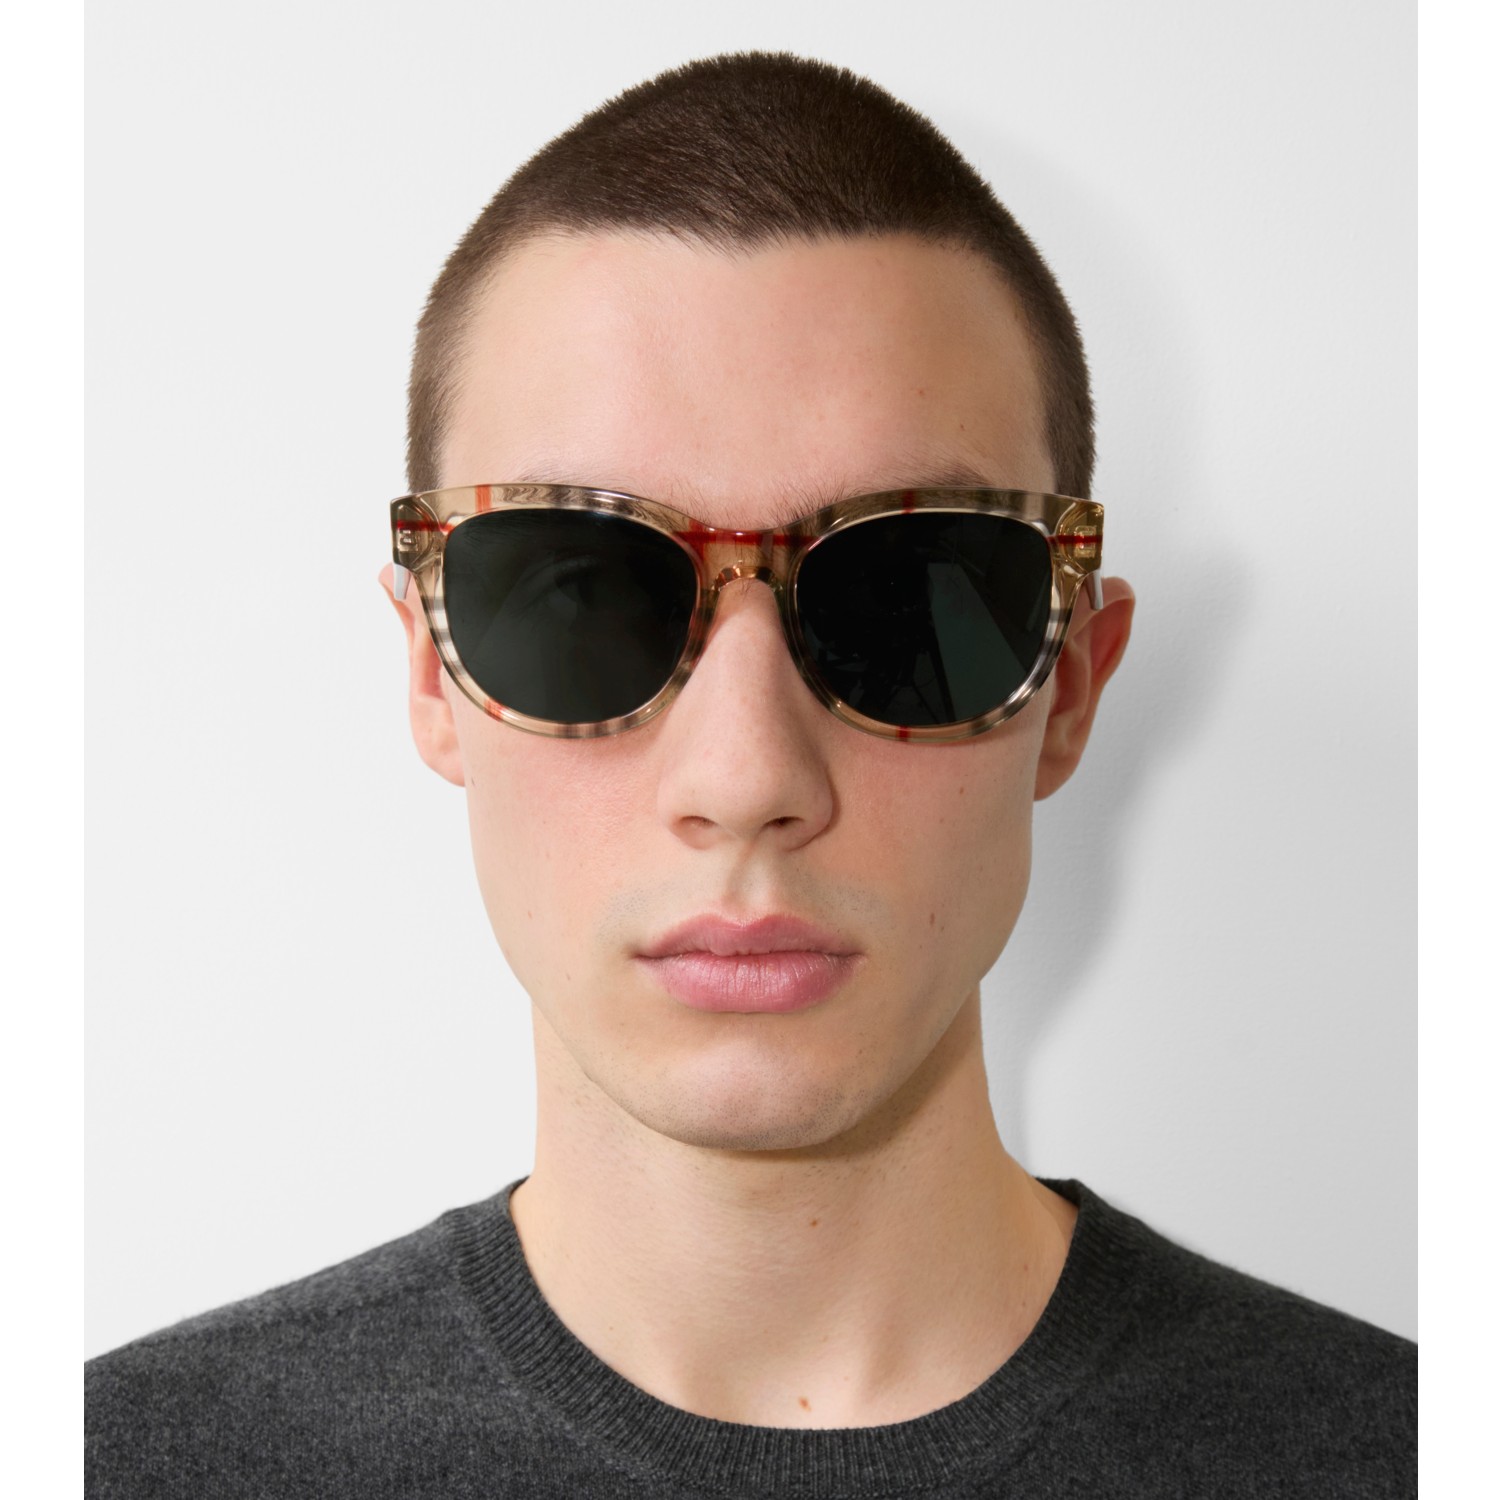 Sonnenbrille mit runder Fassung in Check